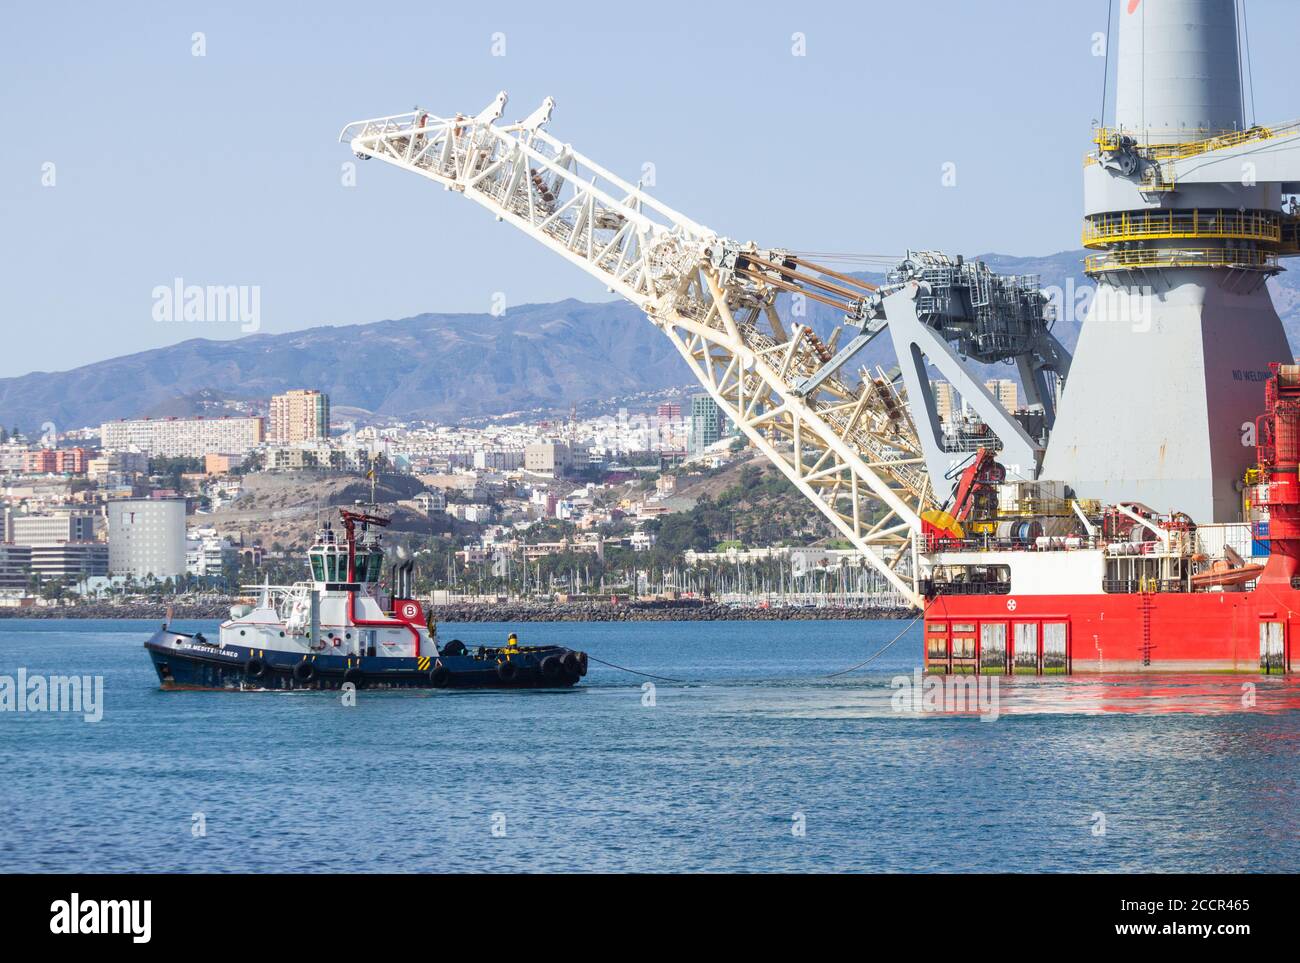 182 metri di lunghezza pipelay e pesante nave di sollevamento, Seven Borialis, essendo guidato fuori del porto di Las Palmas da rimorchiatori. Foto Stock